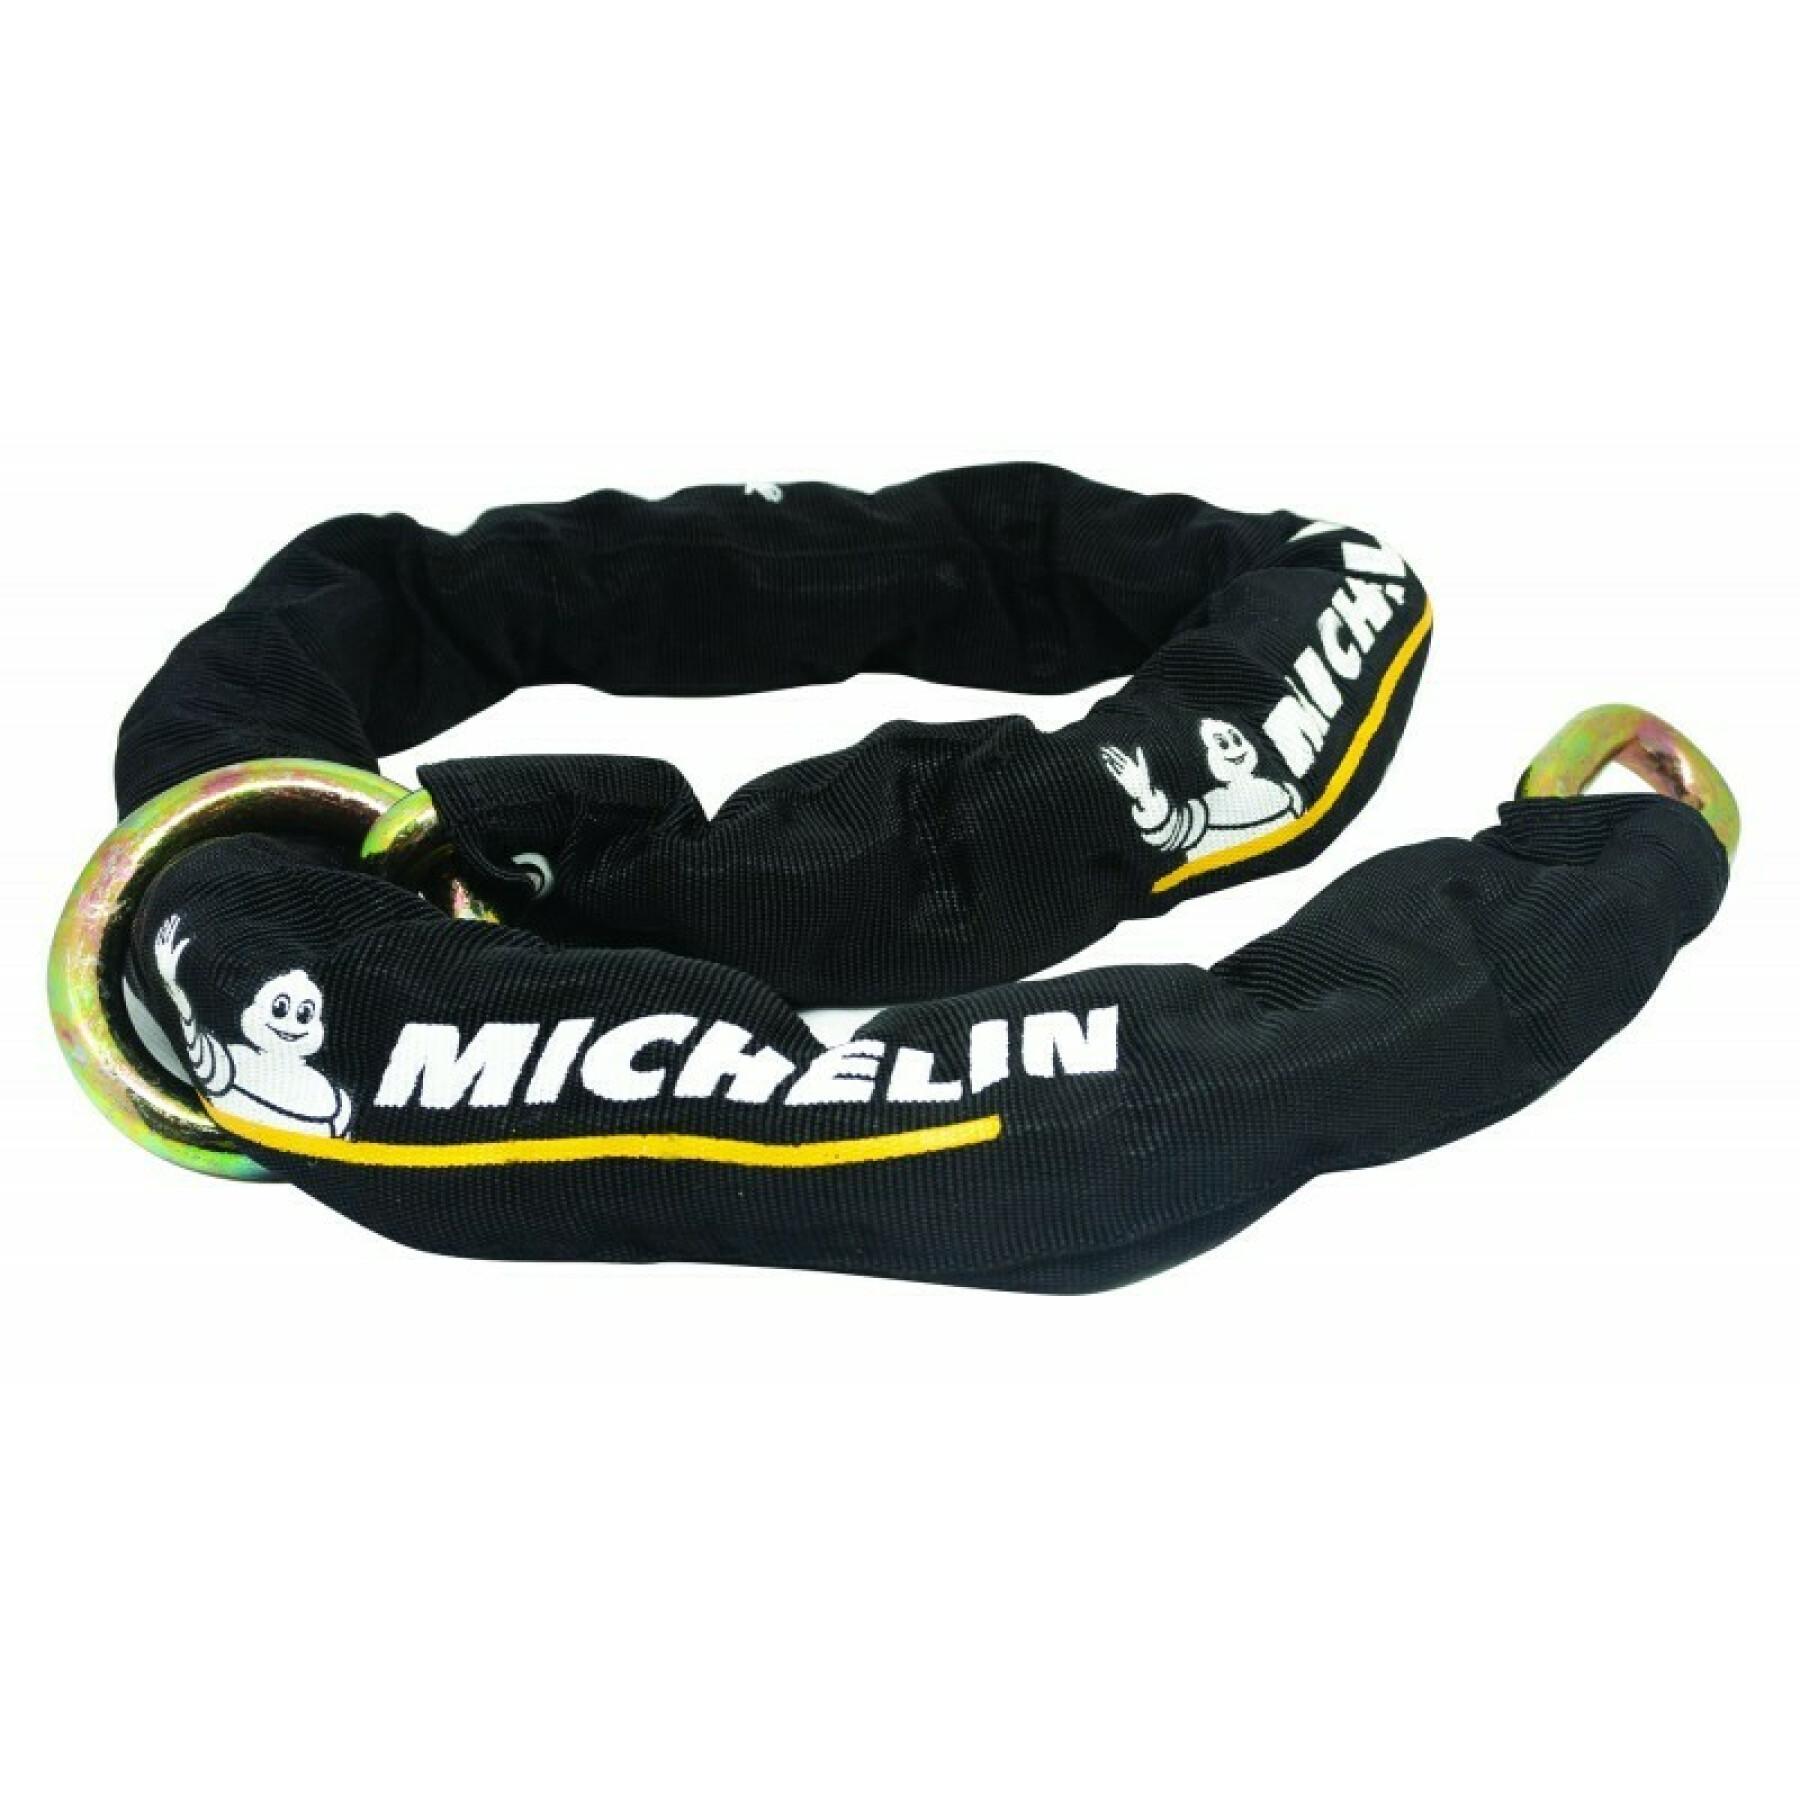 Mini u lock + 120 sra lasso chain Michelin